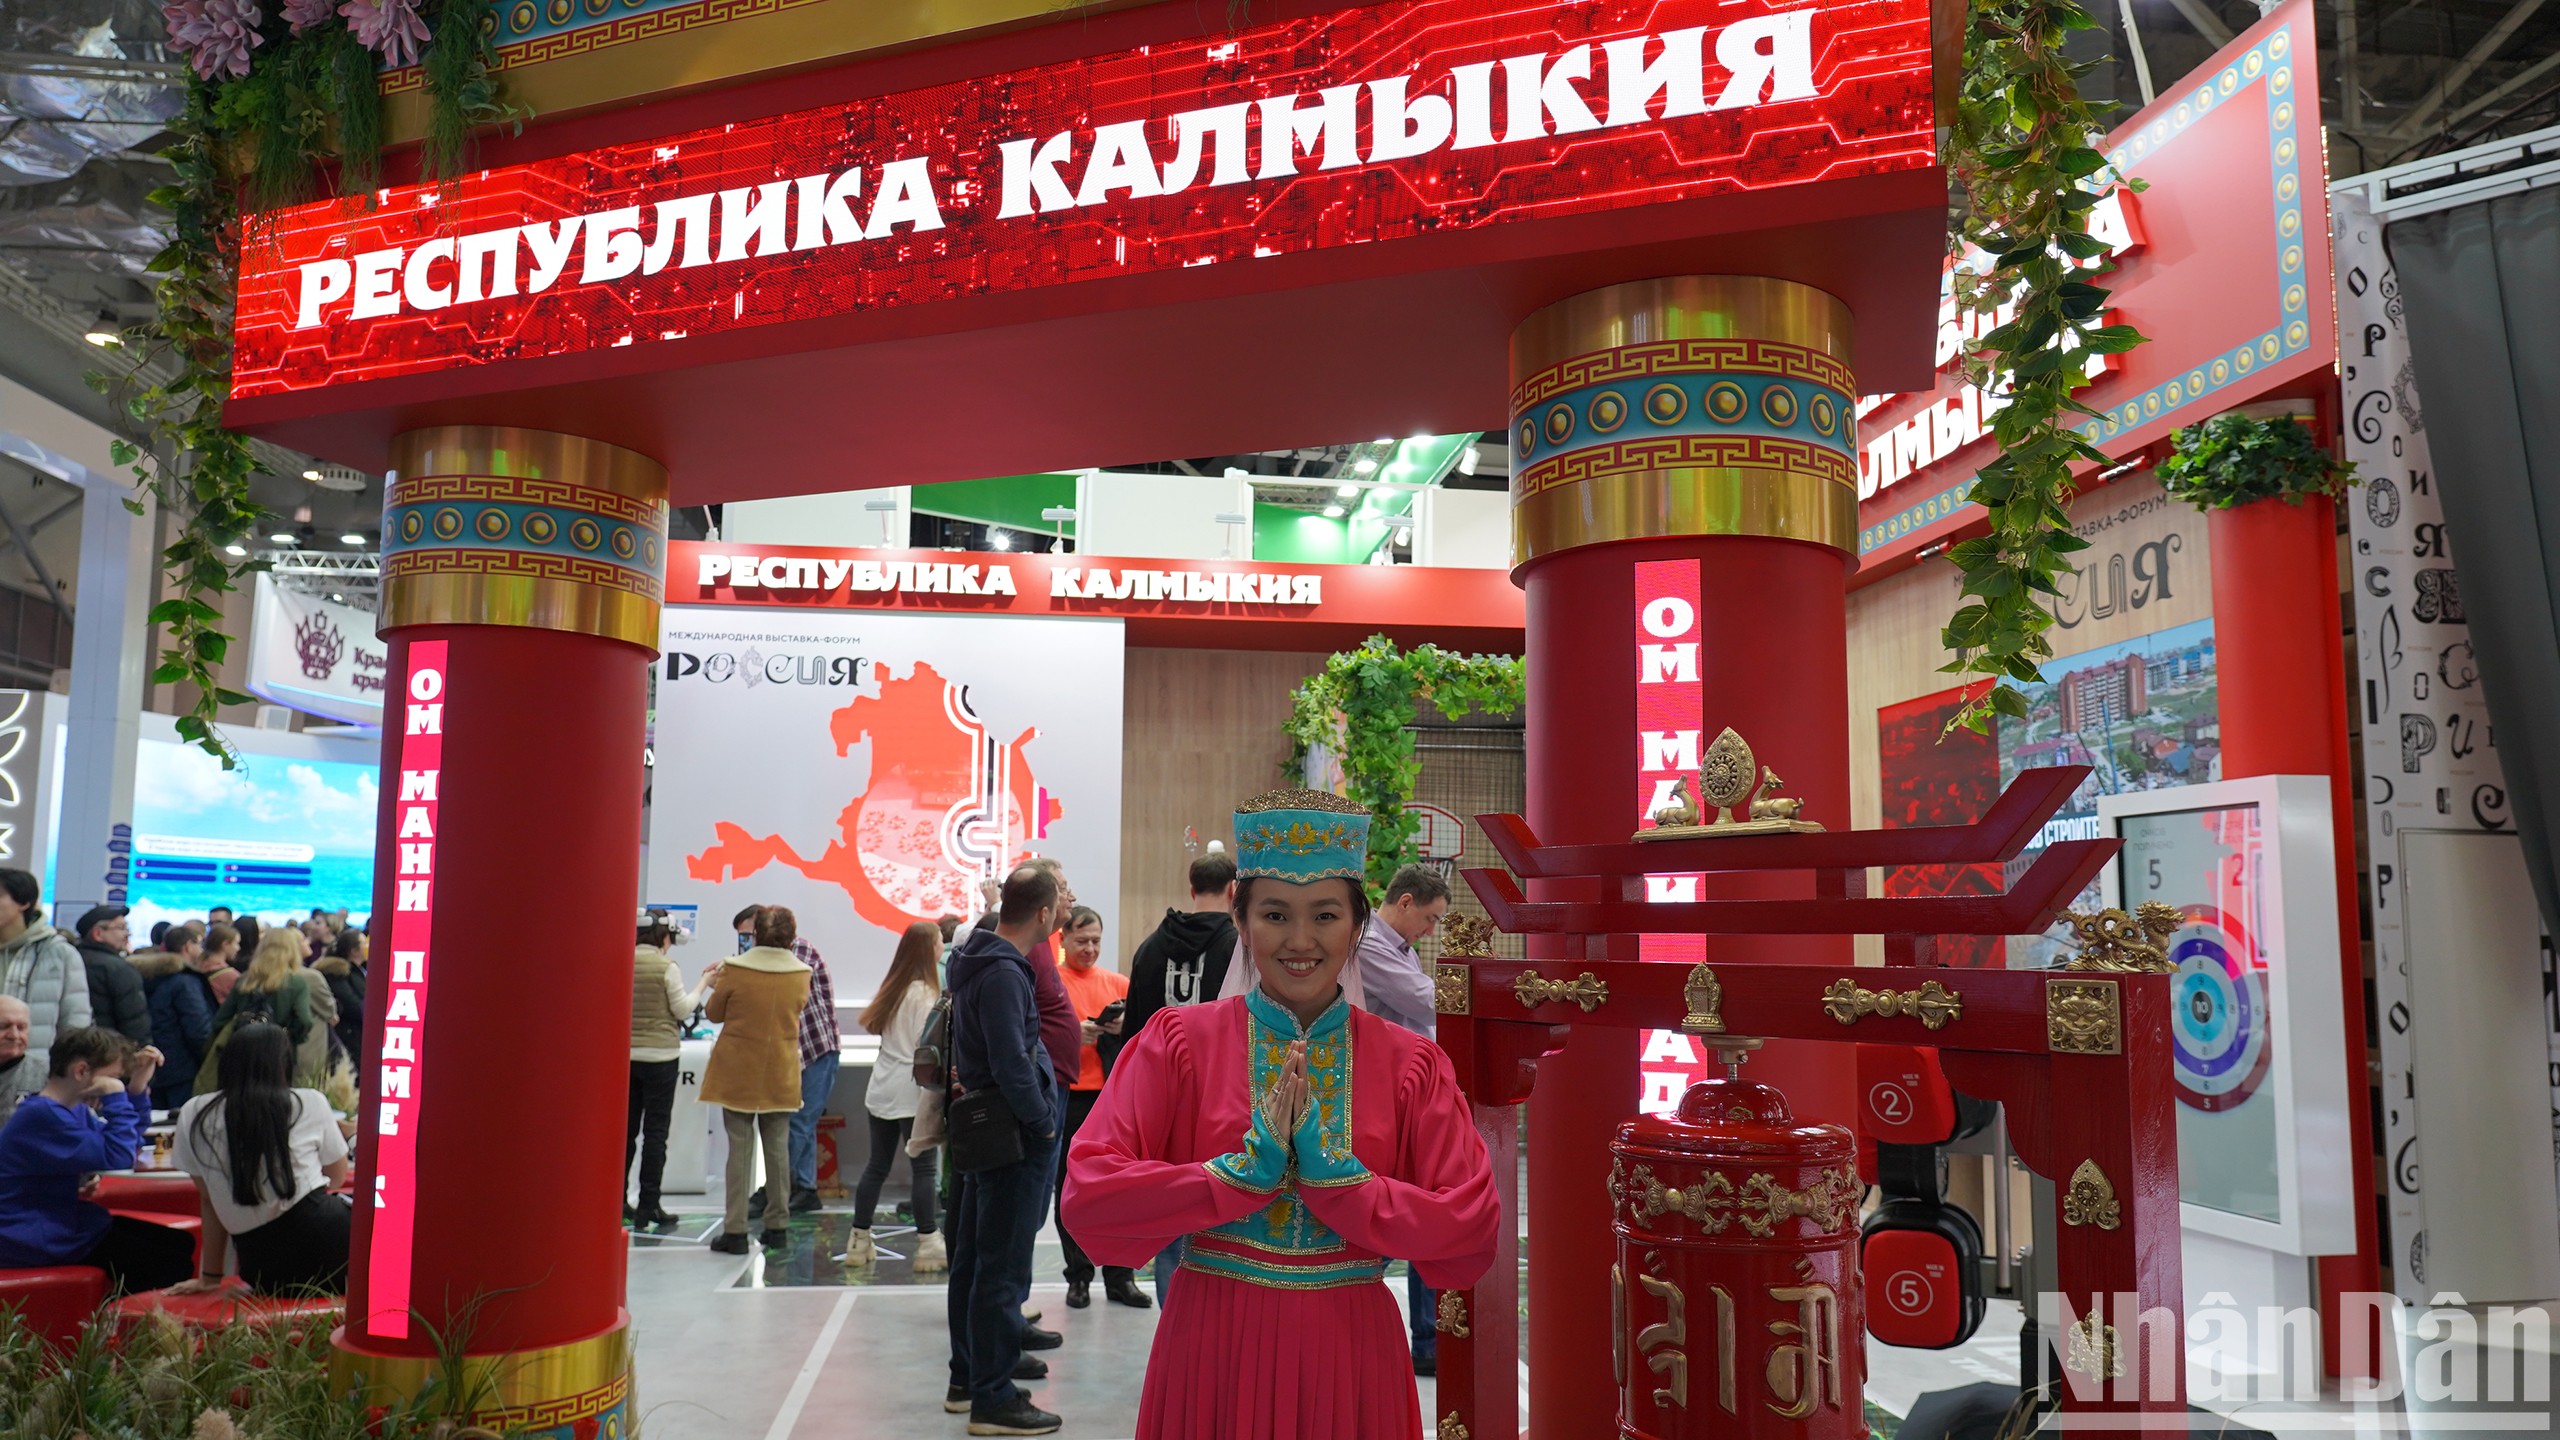 Khu vực trưng bày của Cộng hòa Kalmykia thuộc Liên bang Nga.